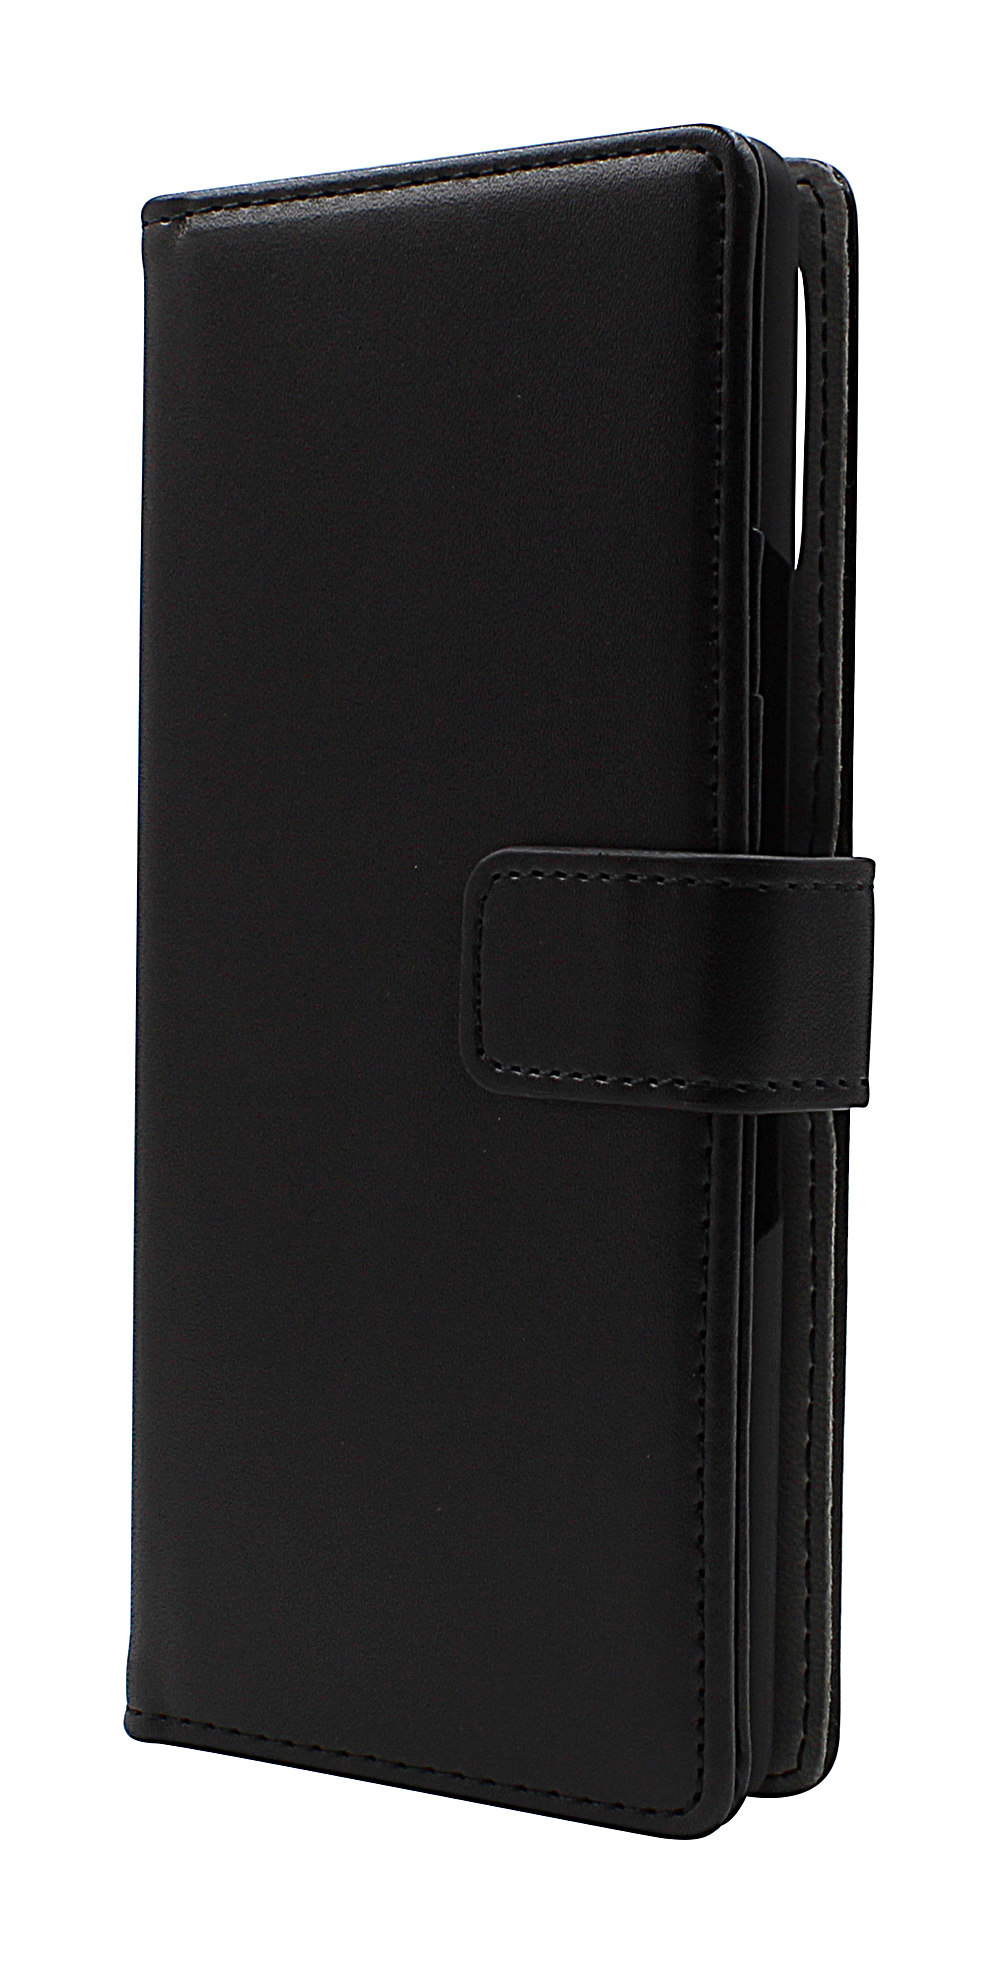 CoverInSkimblocker Magnet Fodral Sony Xperia L4